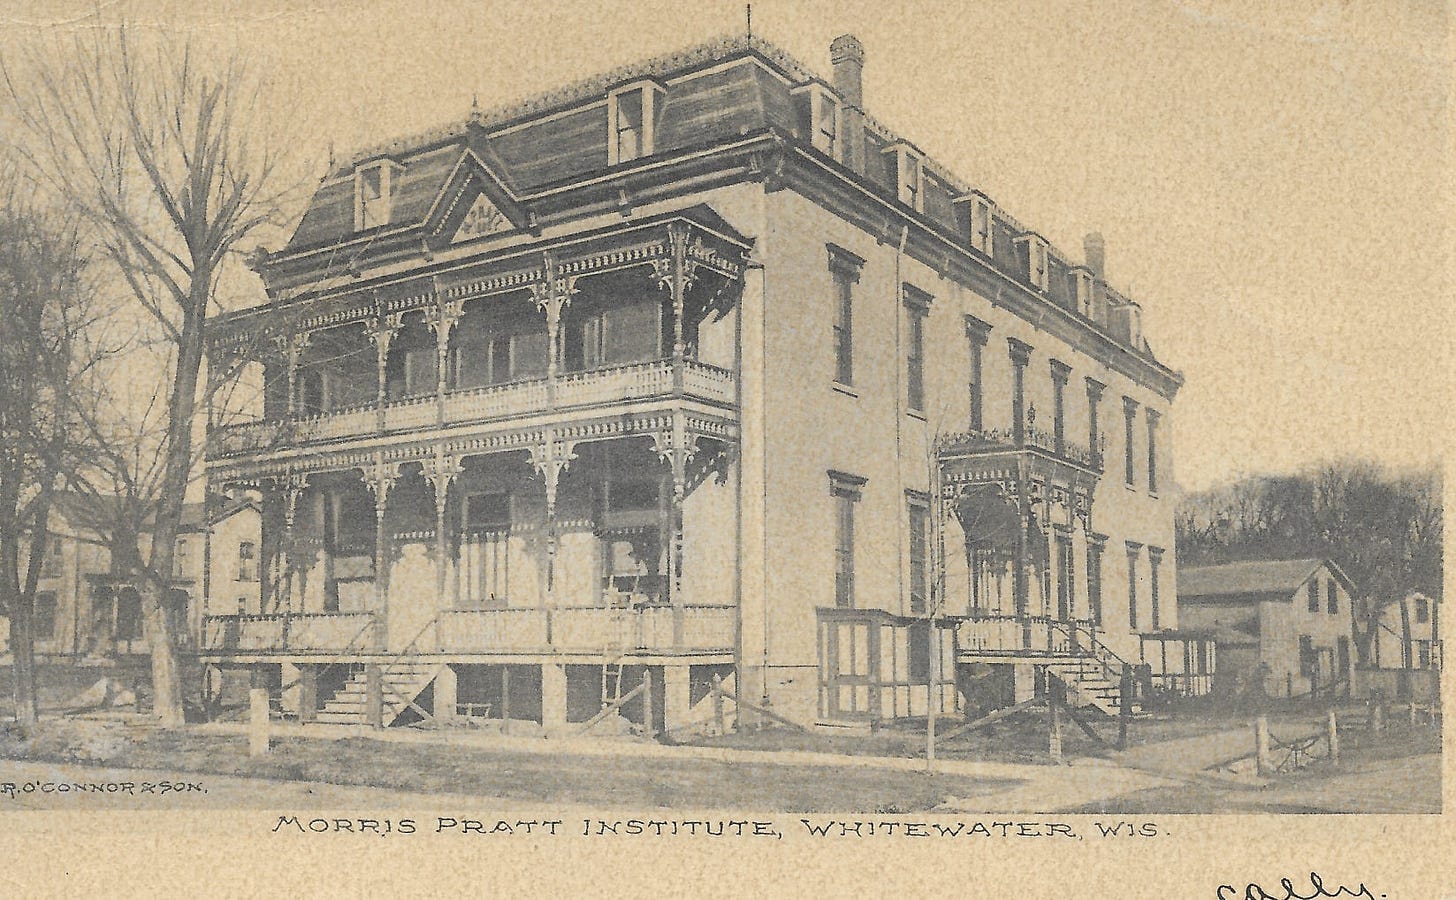 Morris Pratt Institute of Spiritualism in Whitewater